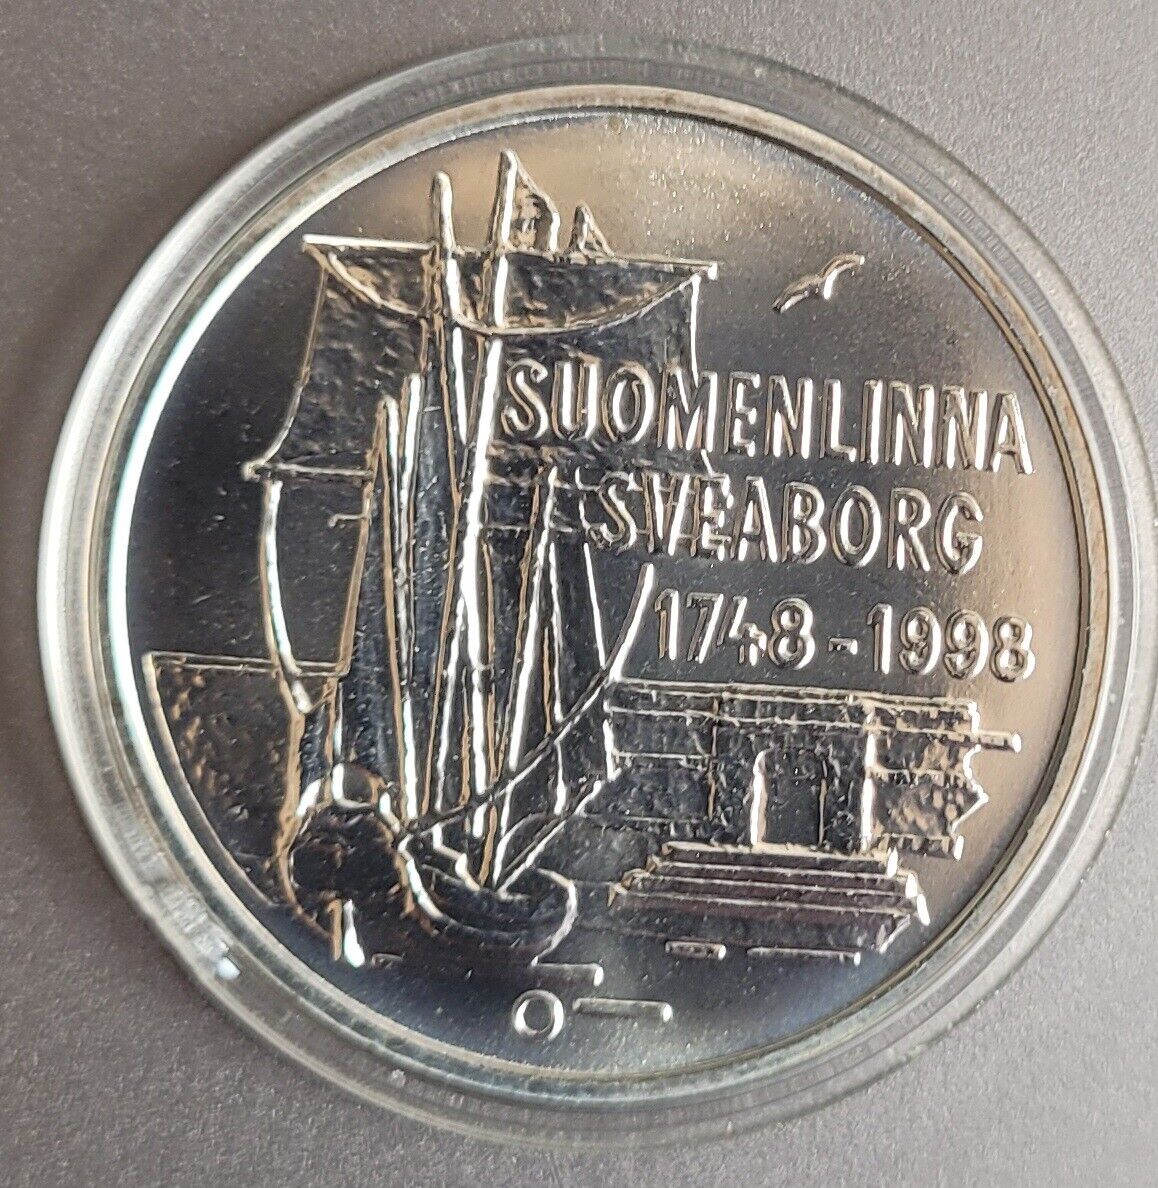 Finland Silver 100 Markkaa 1998 Km-88. Sailing Ship & Suomenlinna Fortress. Unc.